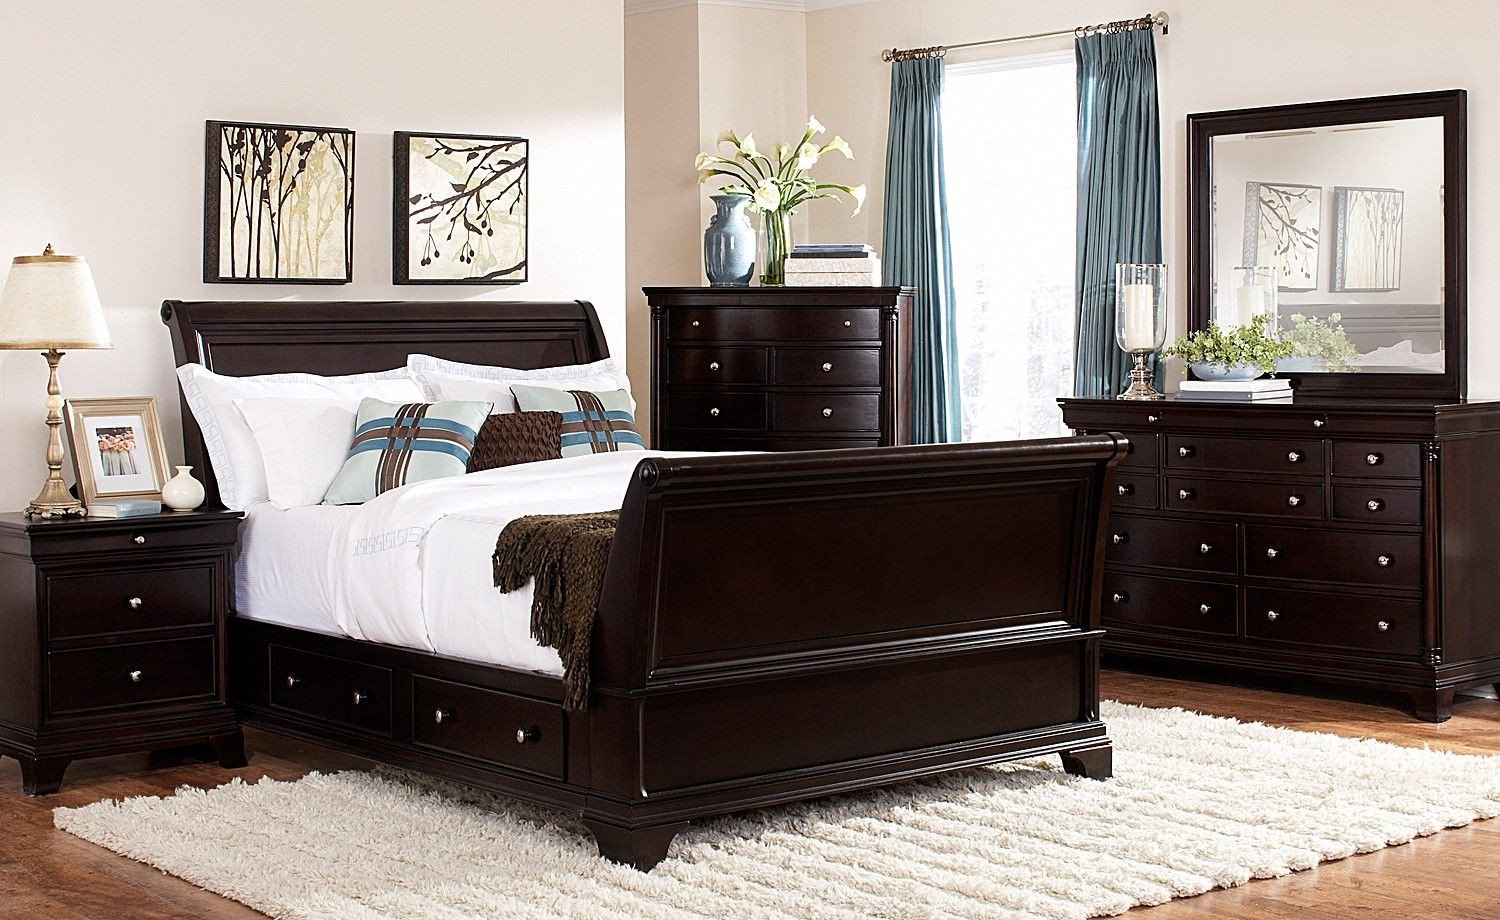 Discount Bedroom Furniture Set Luxury Lakeshore Bedroom 7 Pc Queen Storage Bedroom Furniture